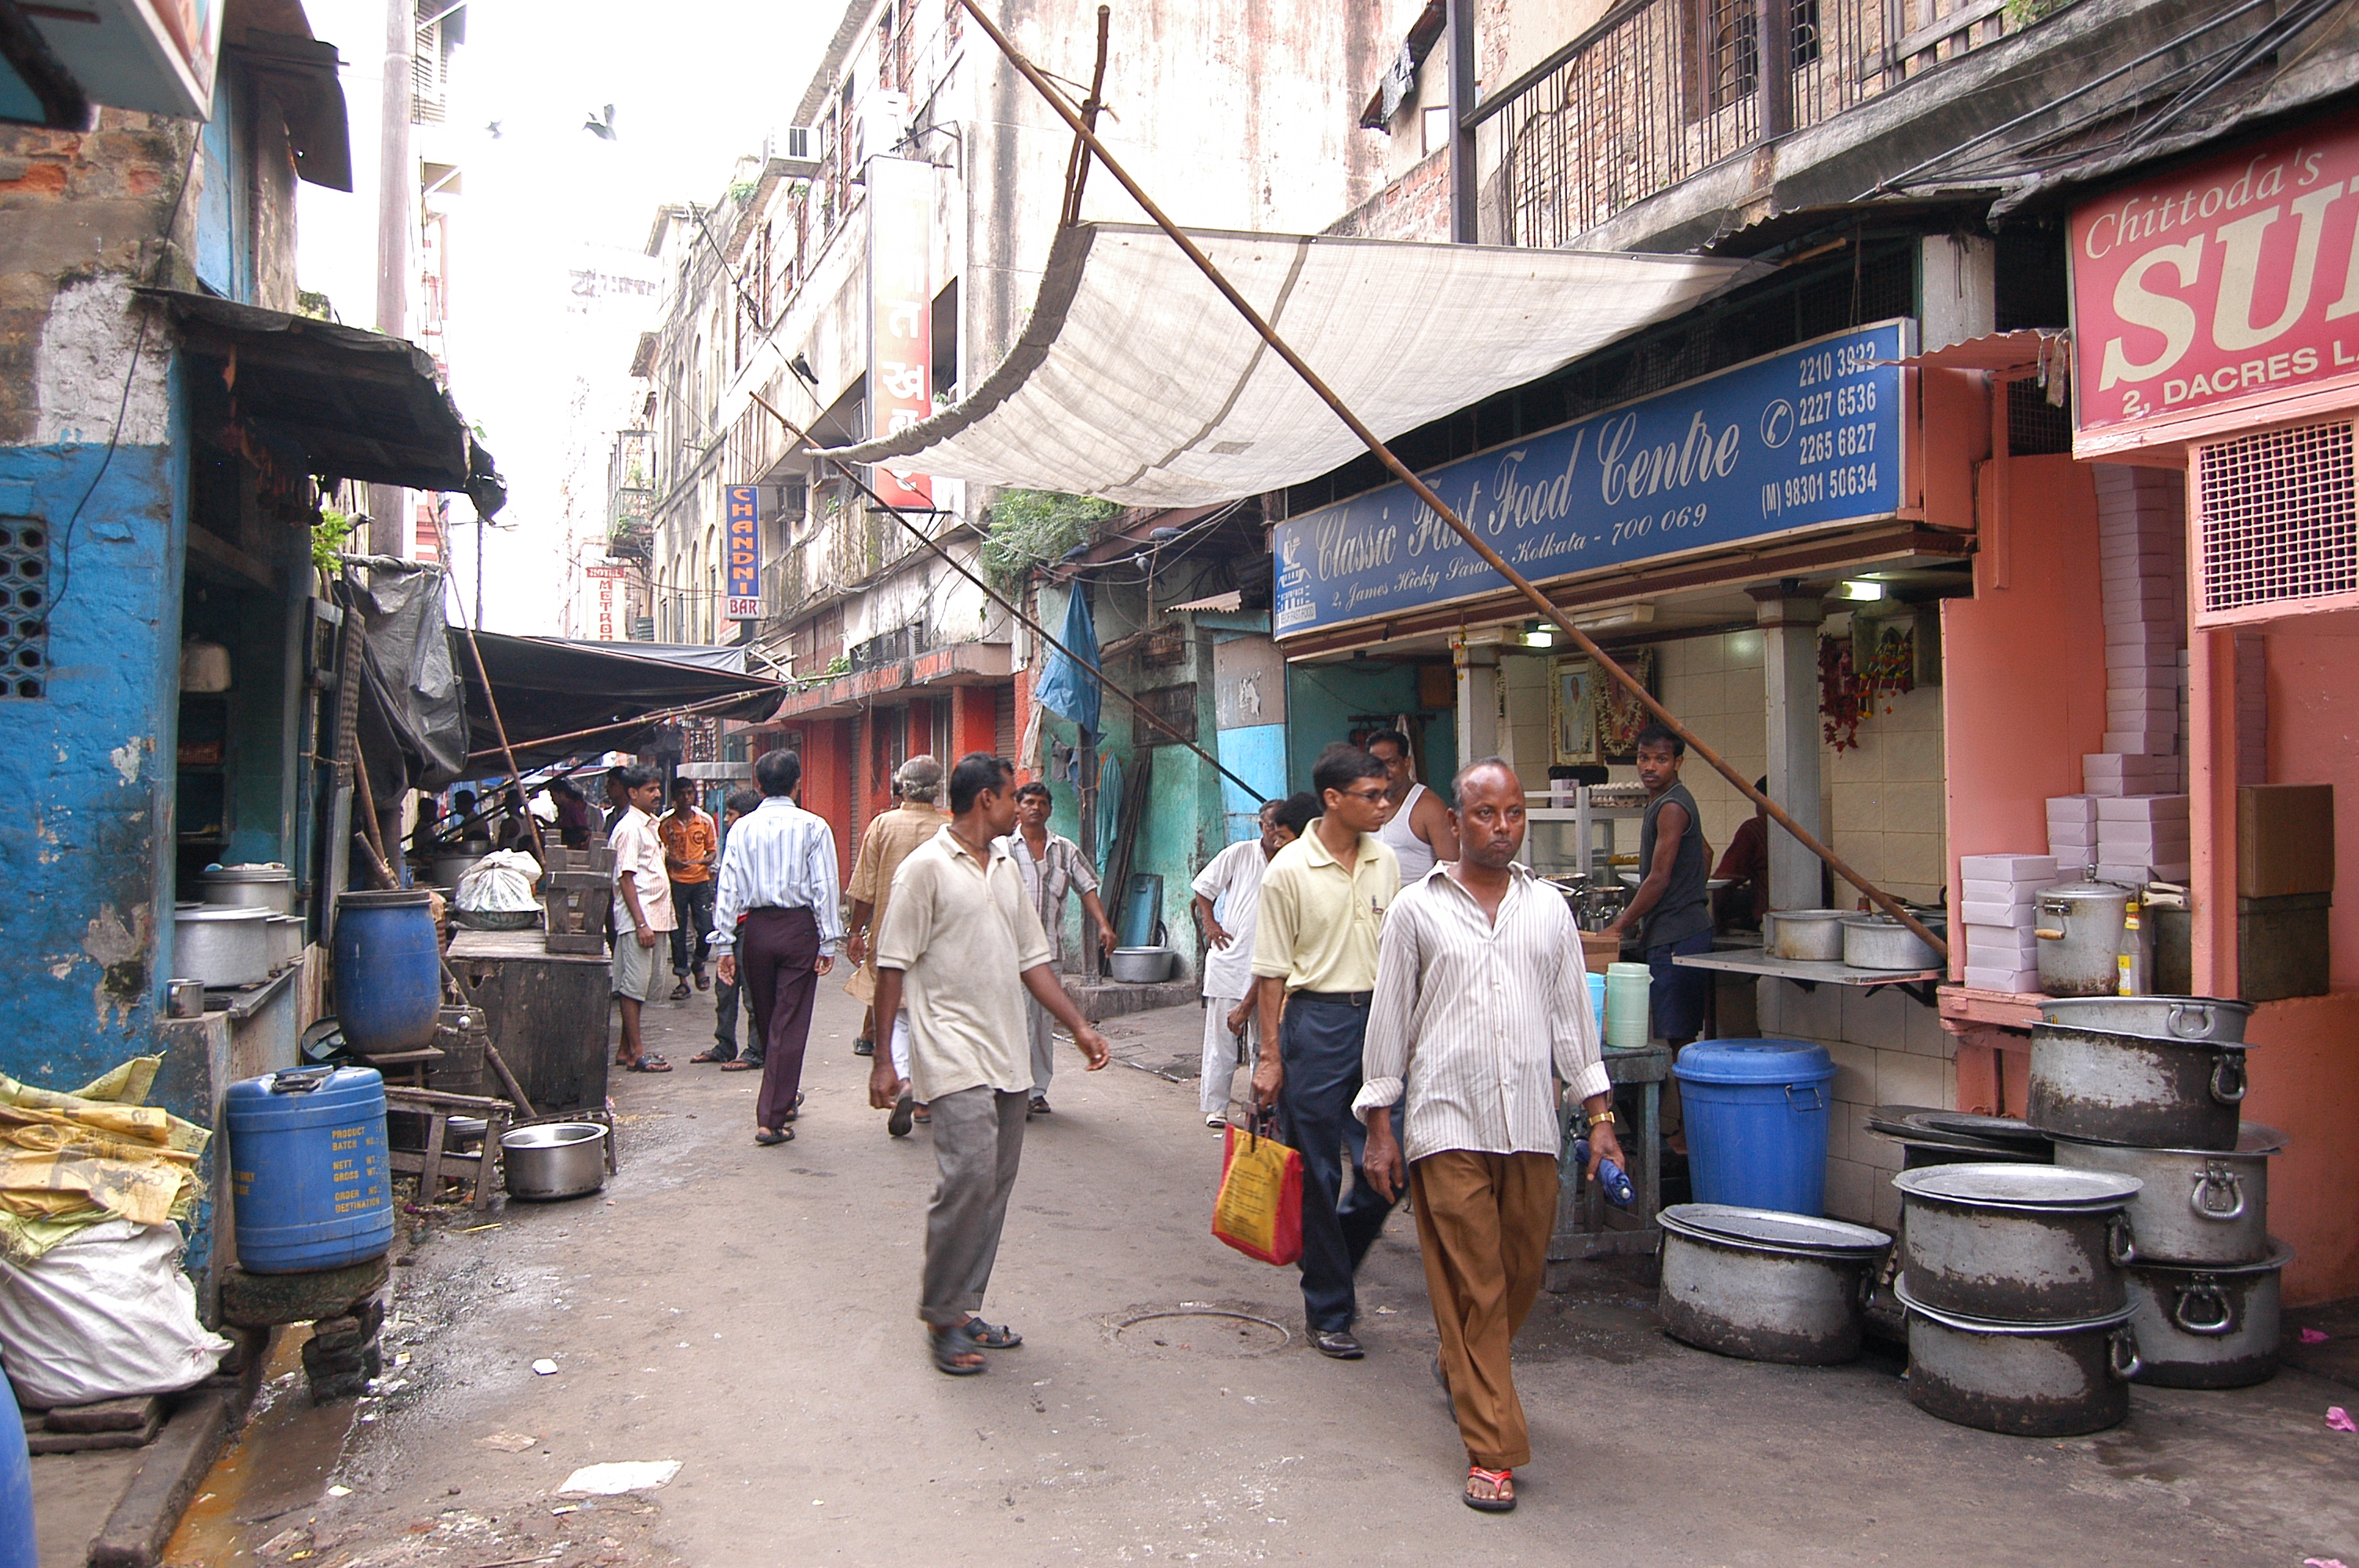 Dacres Lane: Kolkata’s Tiffin Gali